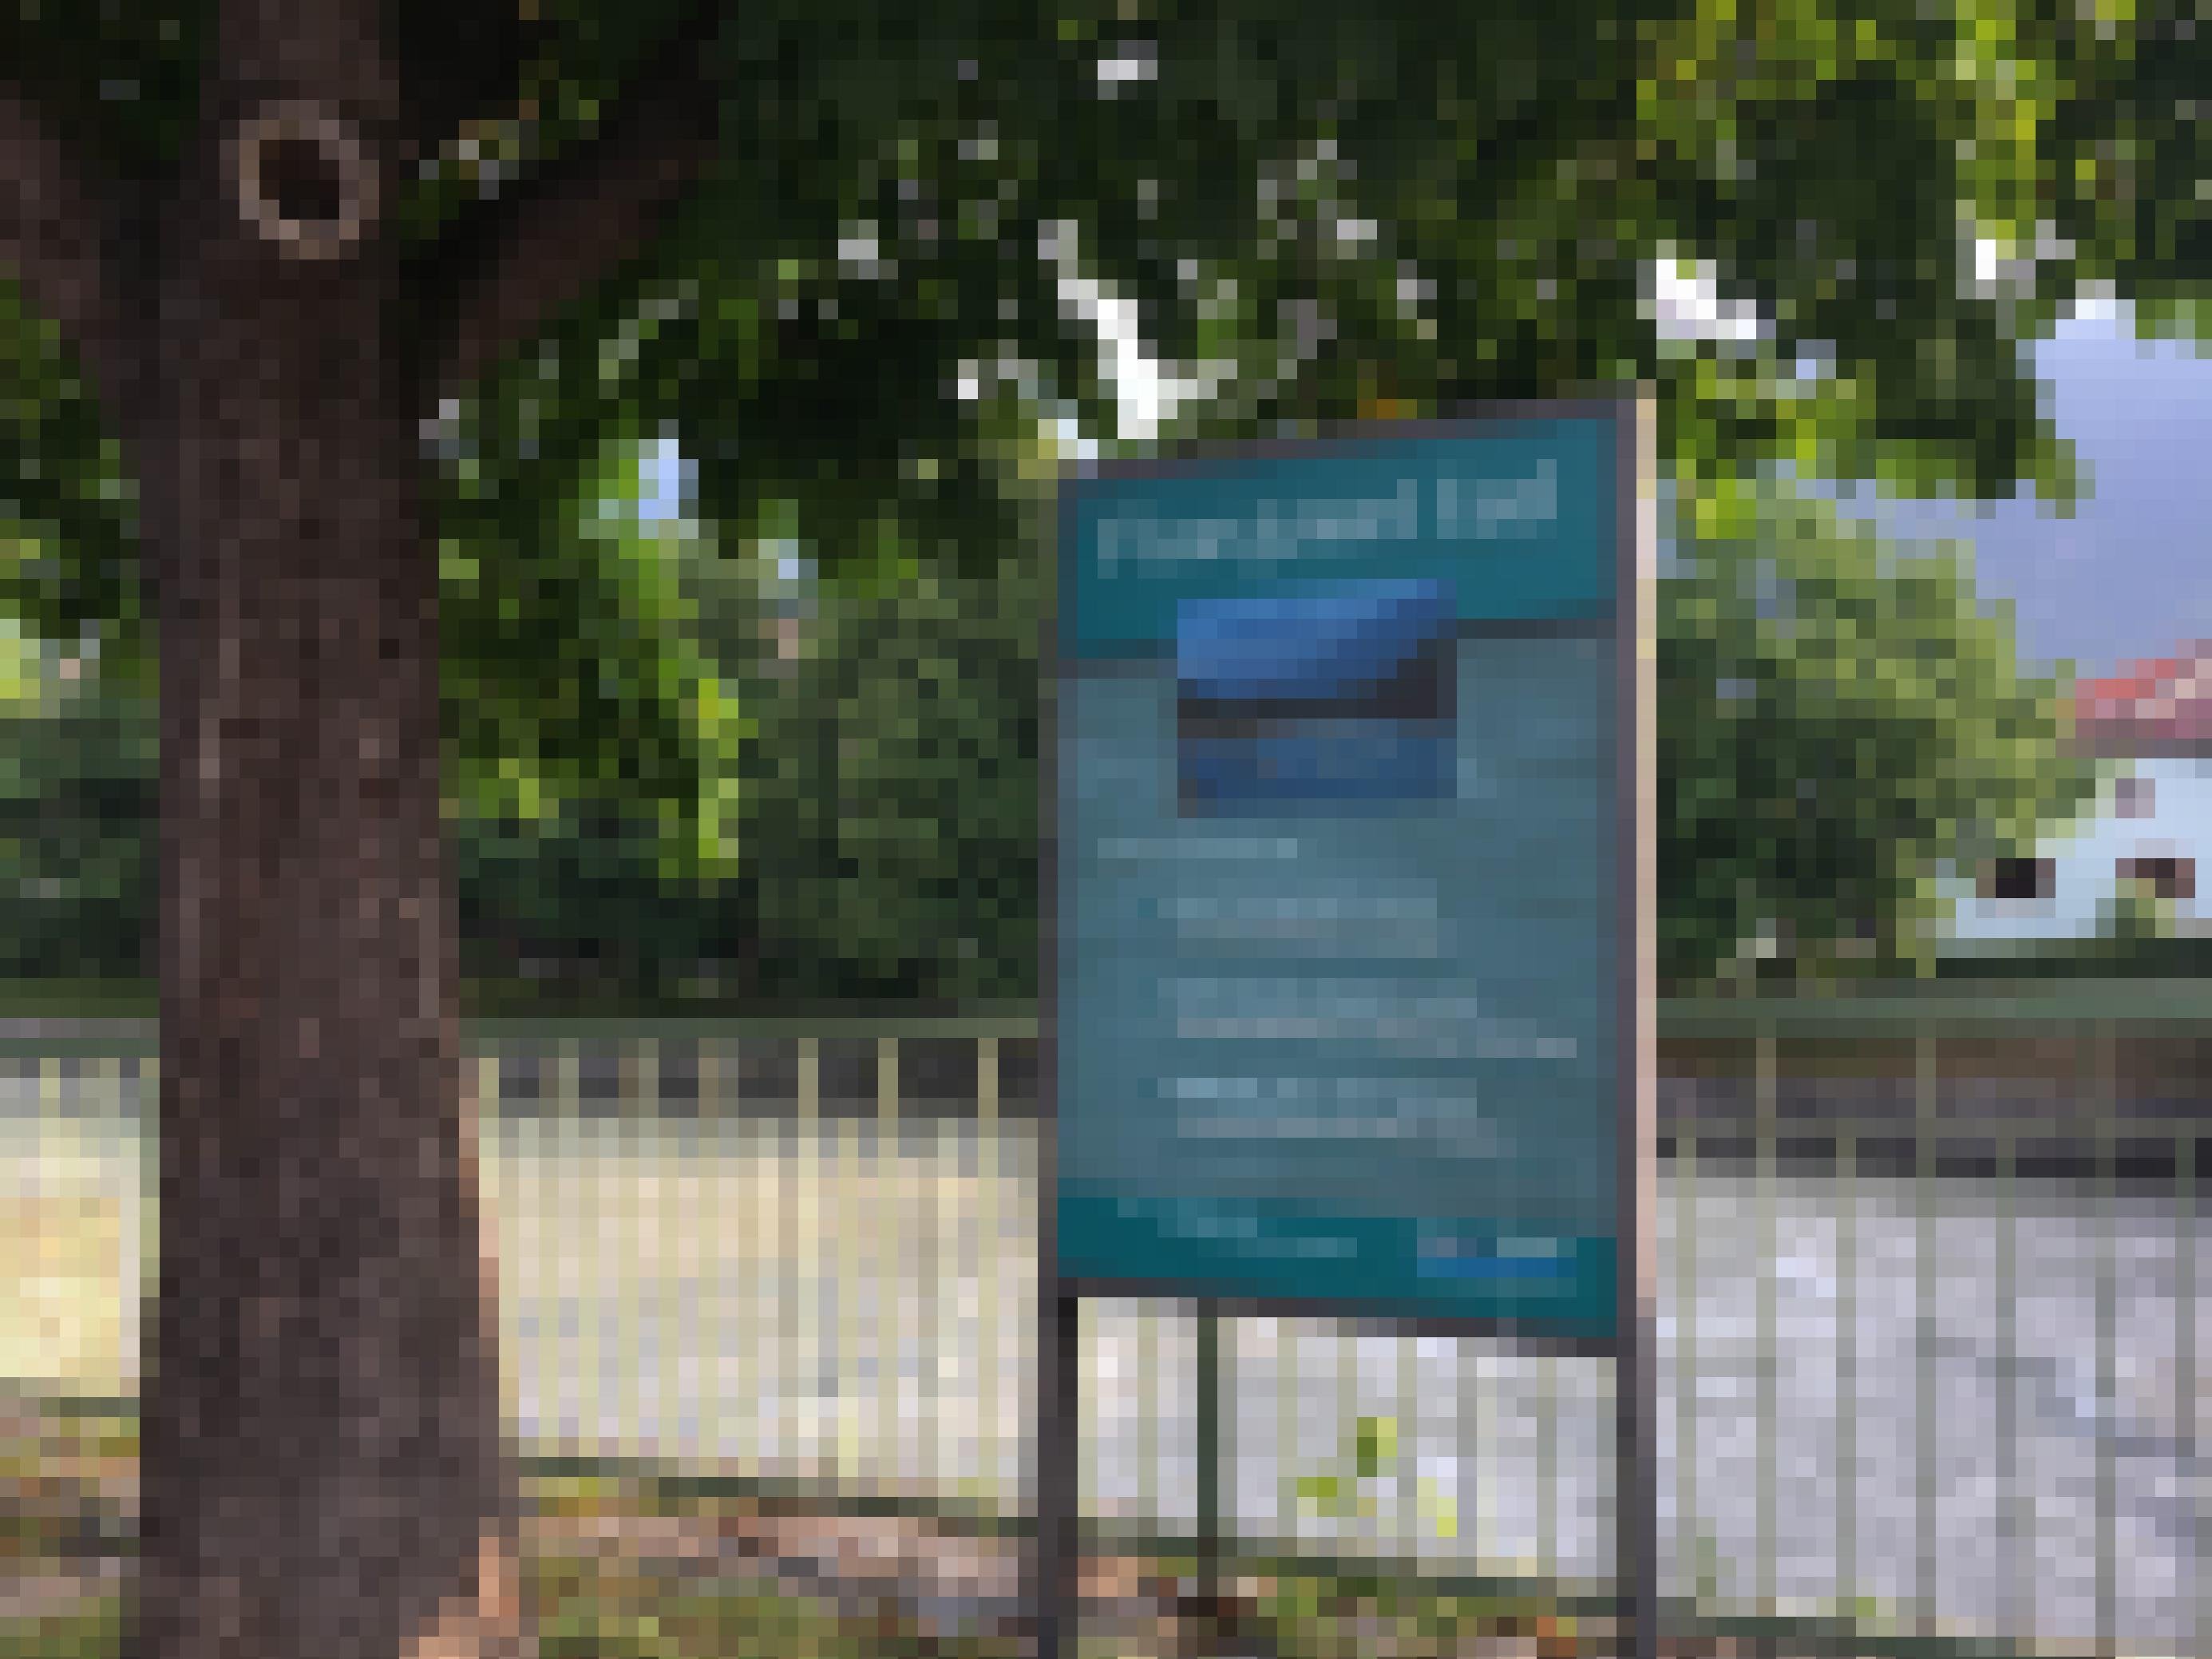 Fluss, Baum, Zaun, Tafel mit Aufschrift „Flussjuwel“ in der Stadt